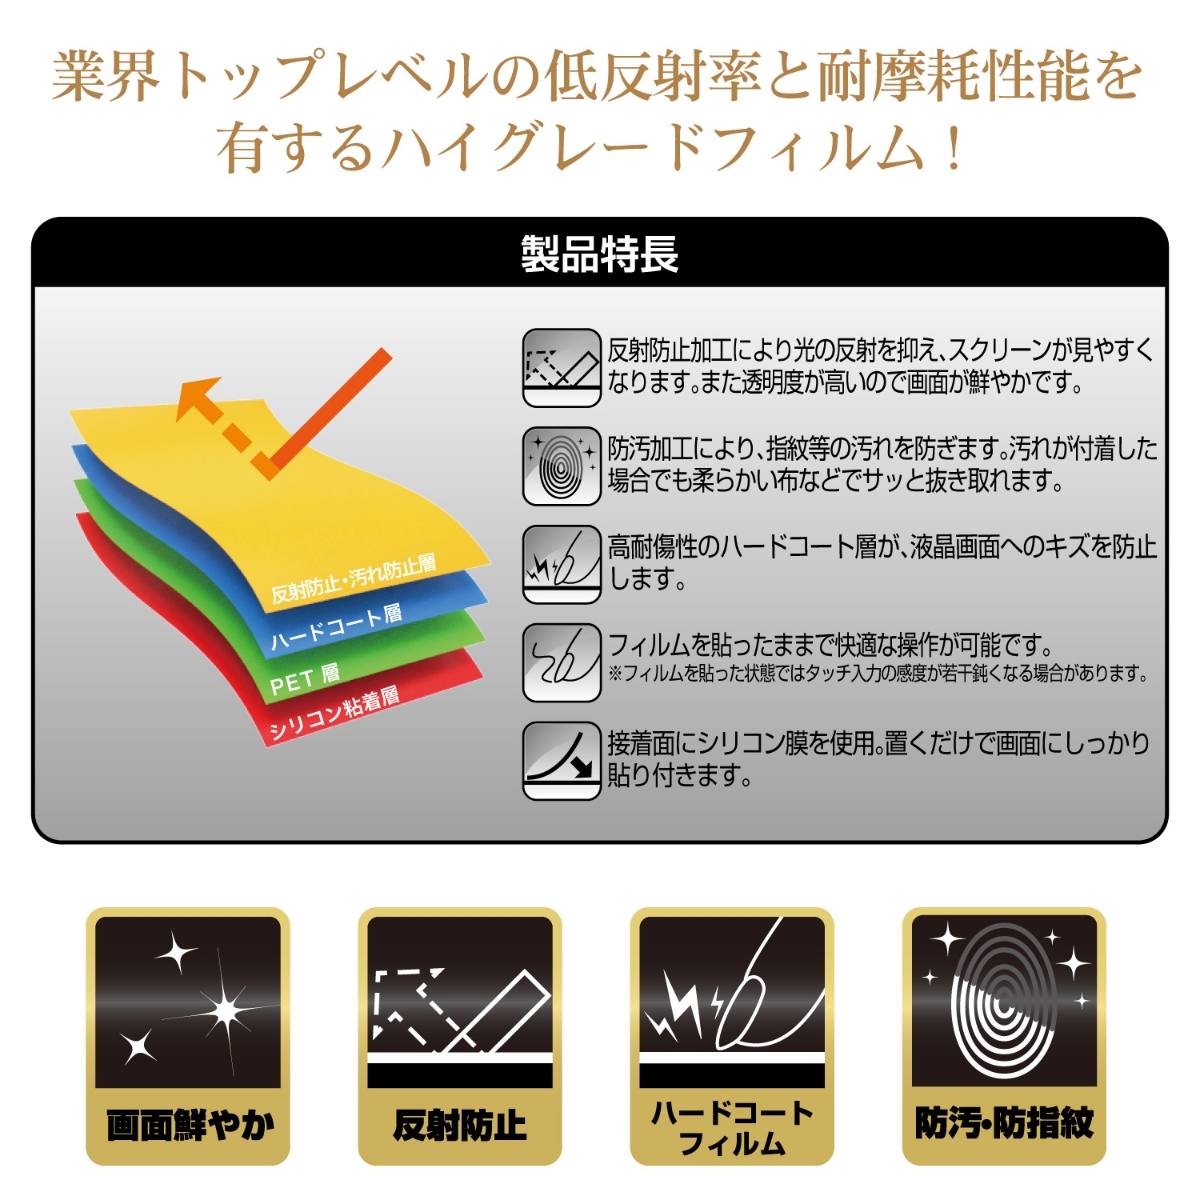 楽天ブックス 任天堂ライセンス商品 Nswlite用超絶艶プレミアムフィルム Nintendo Switch Lite ゲーム